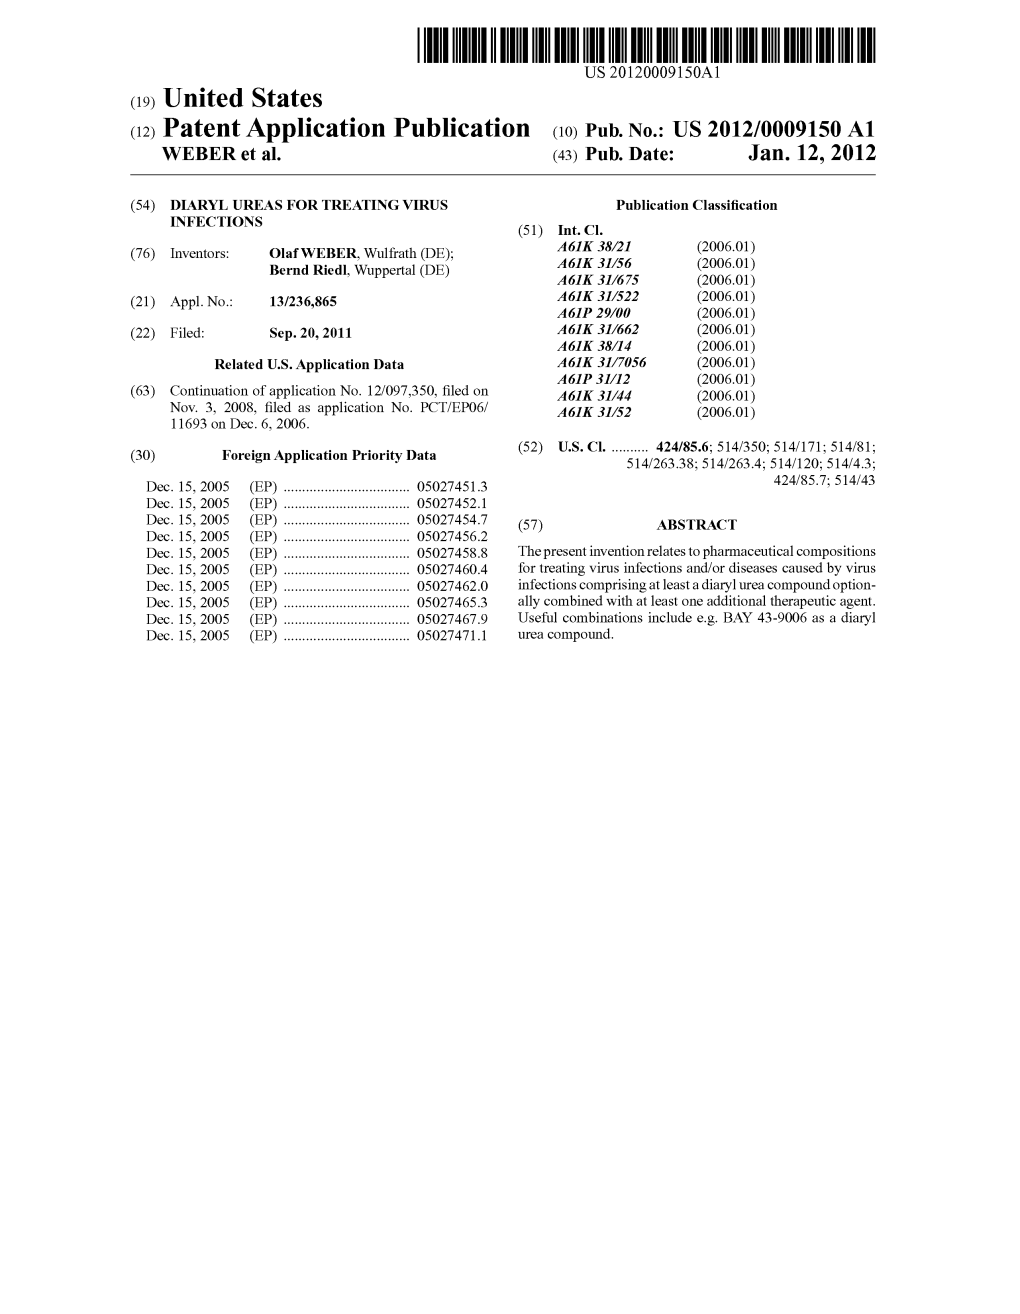 (12) Patent Application Publication (10) Pub. No.: US 2012/0009150 A1 WEBER Et Al